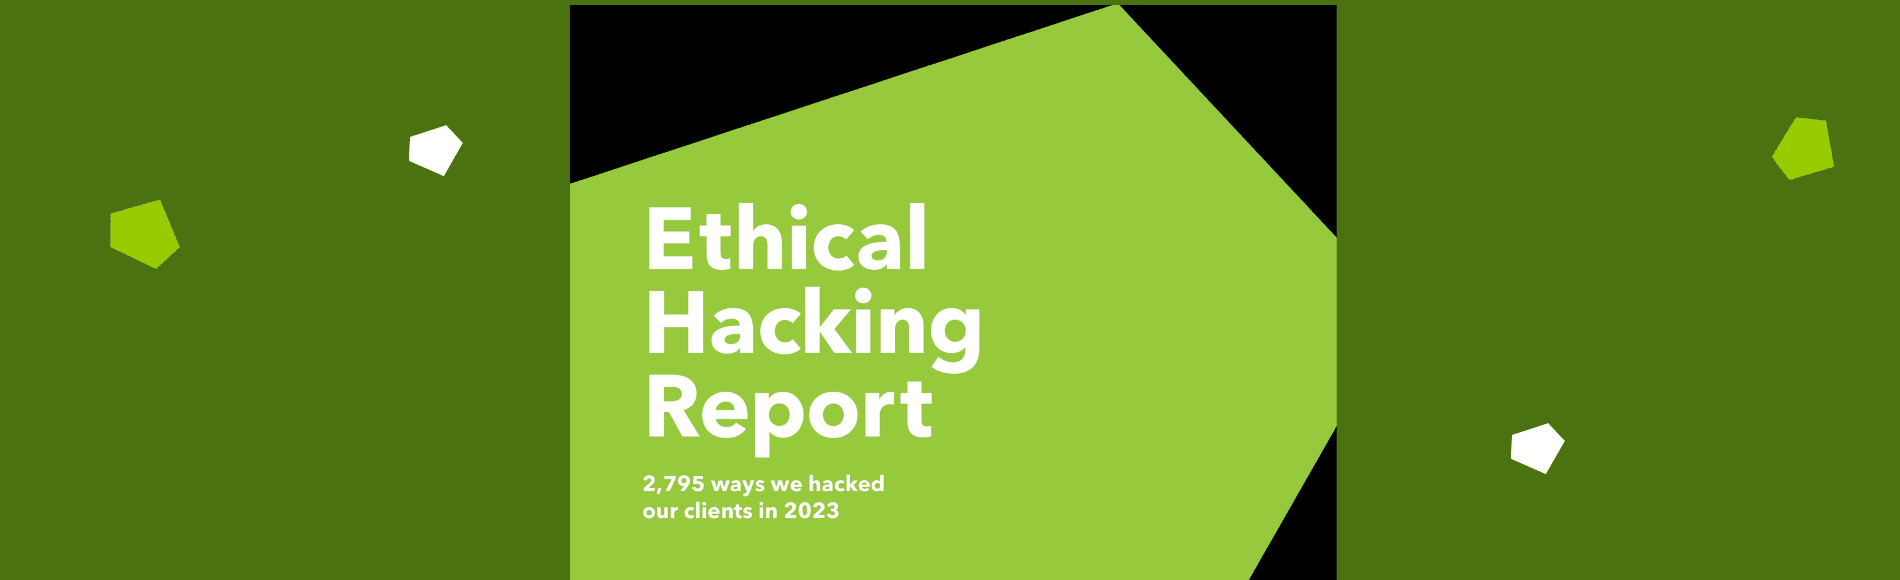 Ethical Hacking Report 2023: Die am meisten gefährdeten Systeme sind Web, Cloud und Infrastruktur.